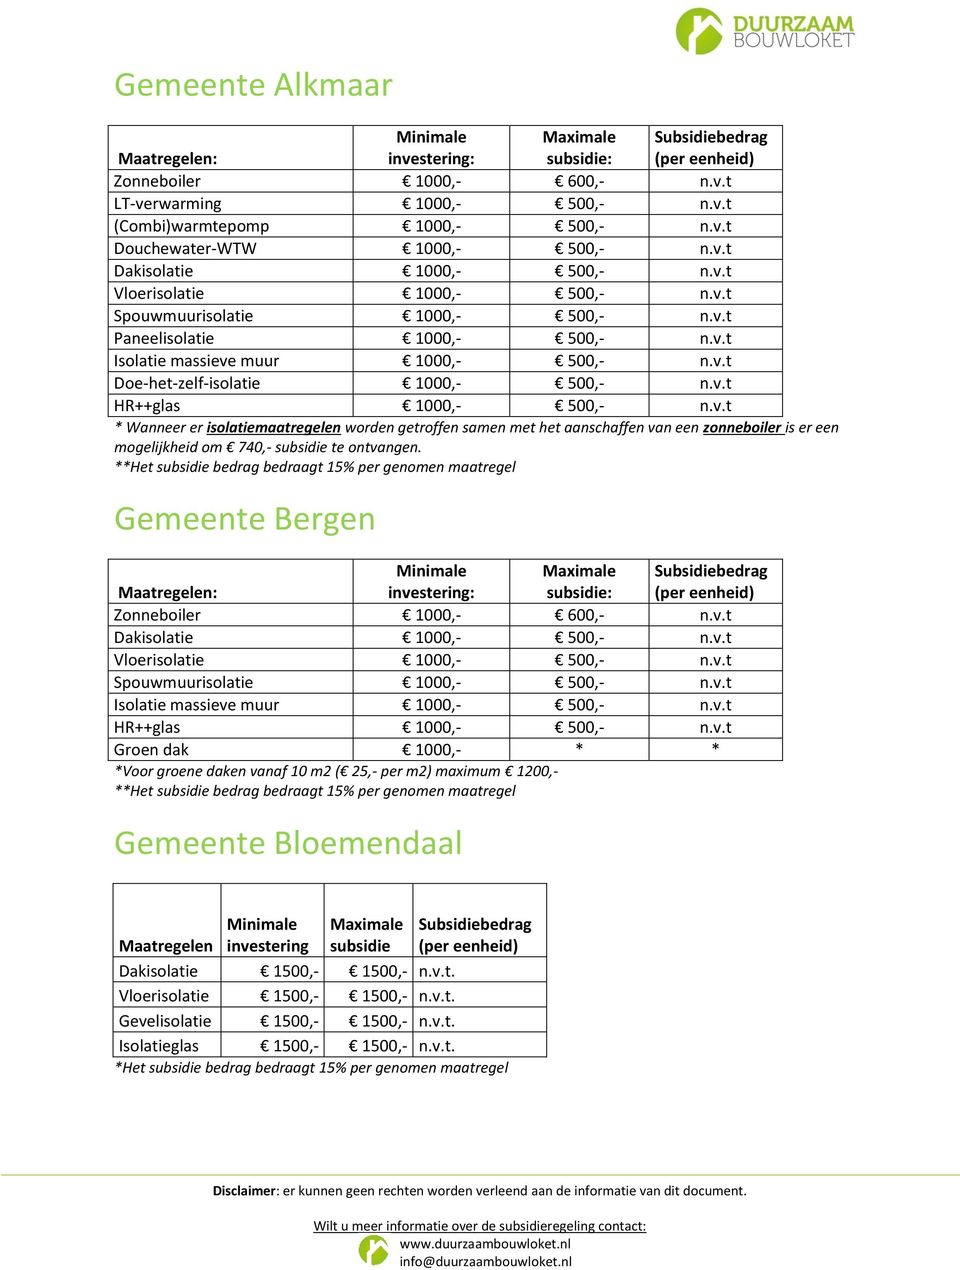 * Gemeente Bergen Groen dak 1000,- * * *Voor groene daken vanaf 10 m2 ( 25,- per m2) maximum 1200,- * Gemeente Bloemendaal Dakisolatie 1500,- 1500,- n.v.t. Vloerisolatie 1500,- 1500,- n.